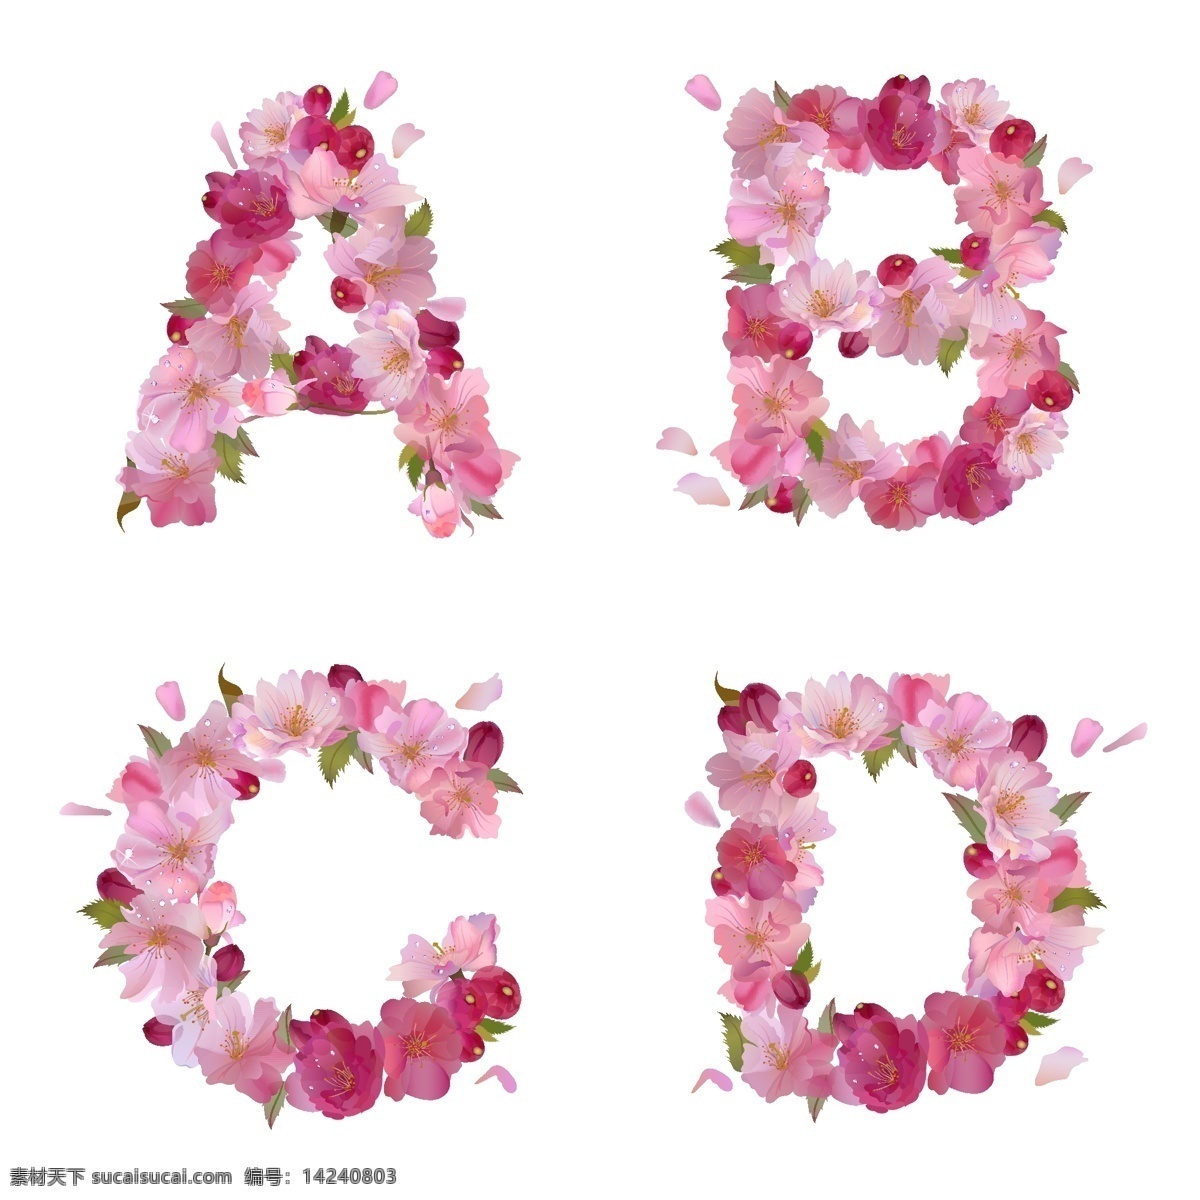 花朵 构成 英文 字母 花卉 植物 英文字母 花纹花边 底纹边框 矢量素材 白色